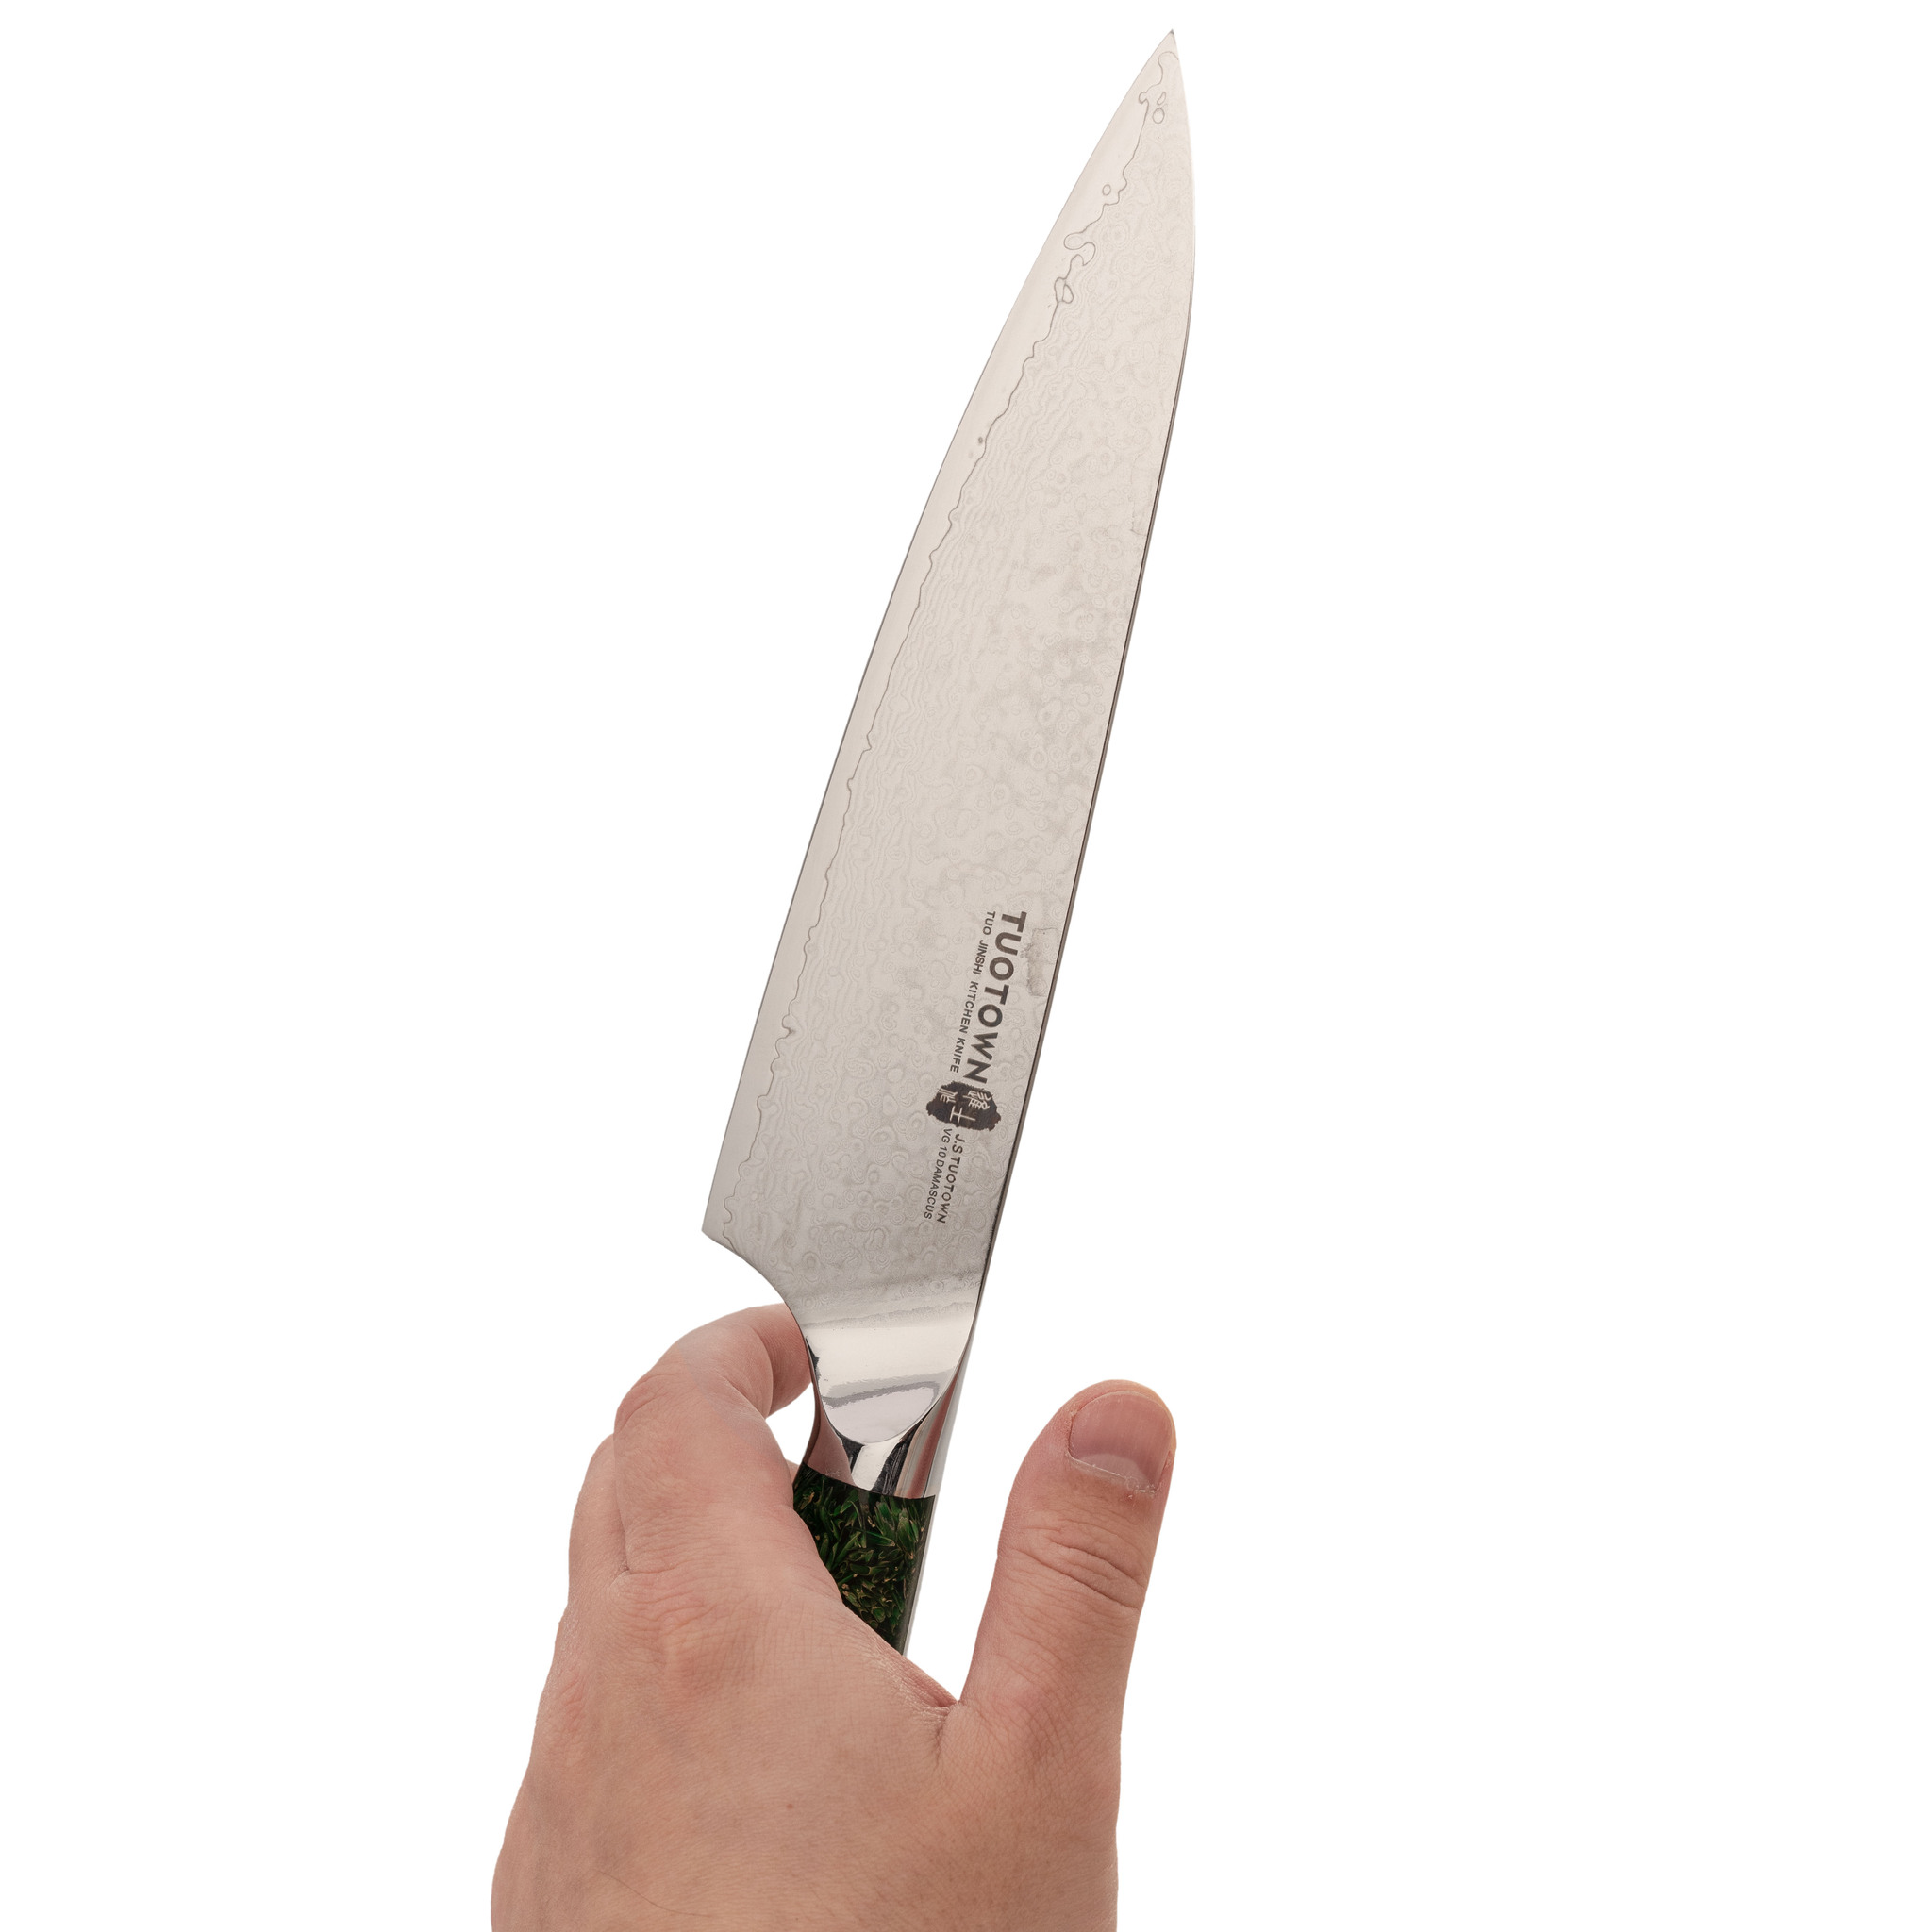 Кухонный нож Шеф Tuotown, сталь VG10, обкладка Damascus, рукоять акрил, зеленый - фото 4